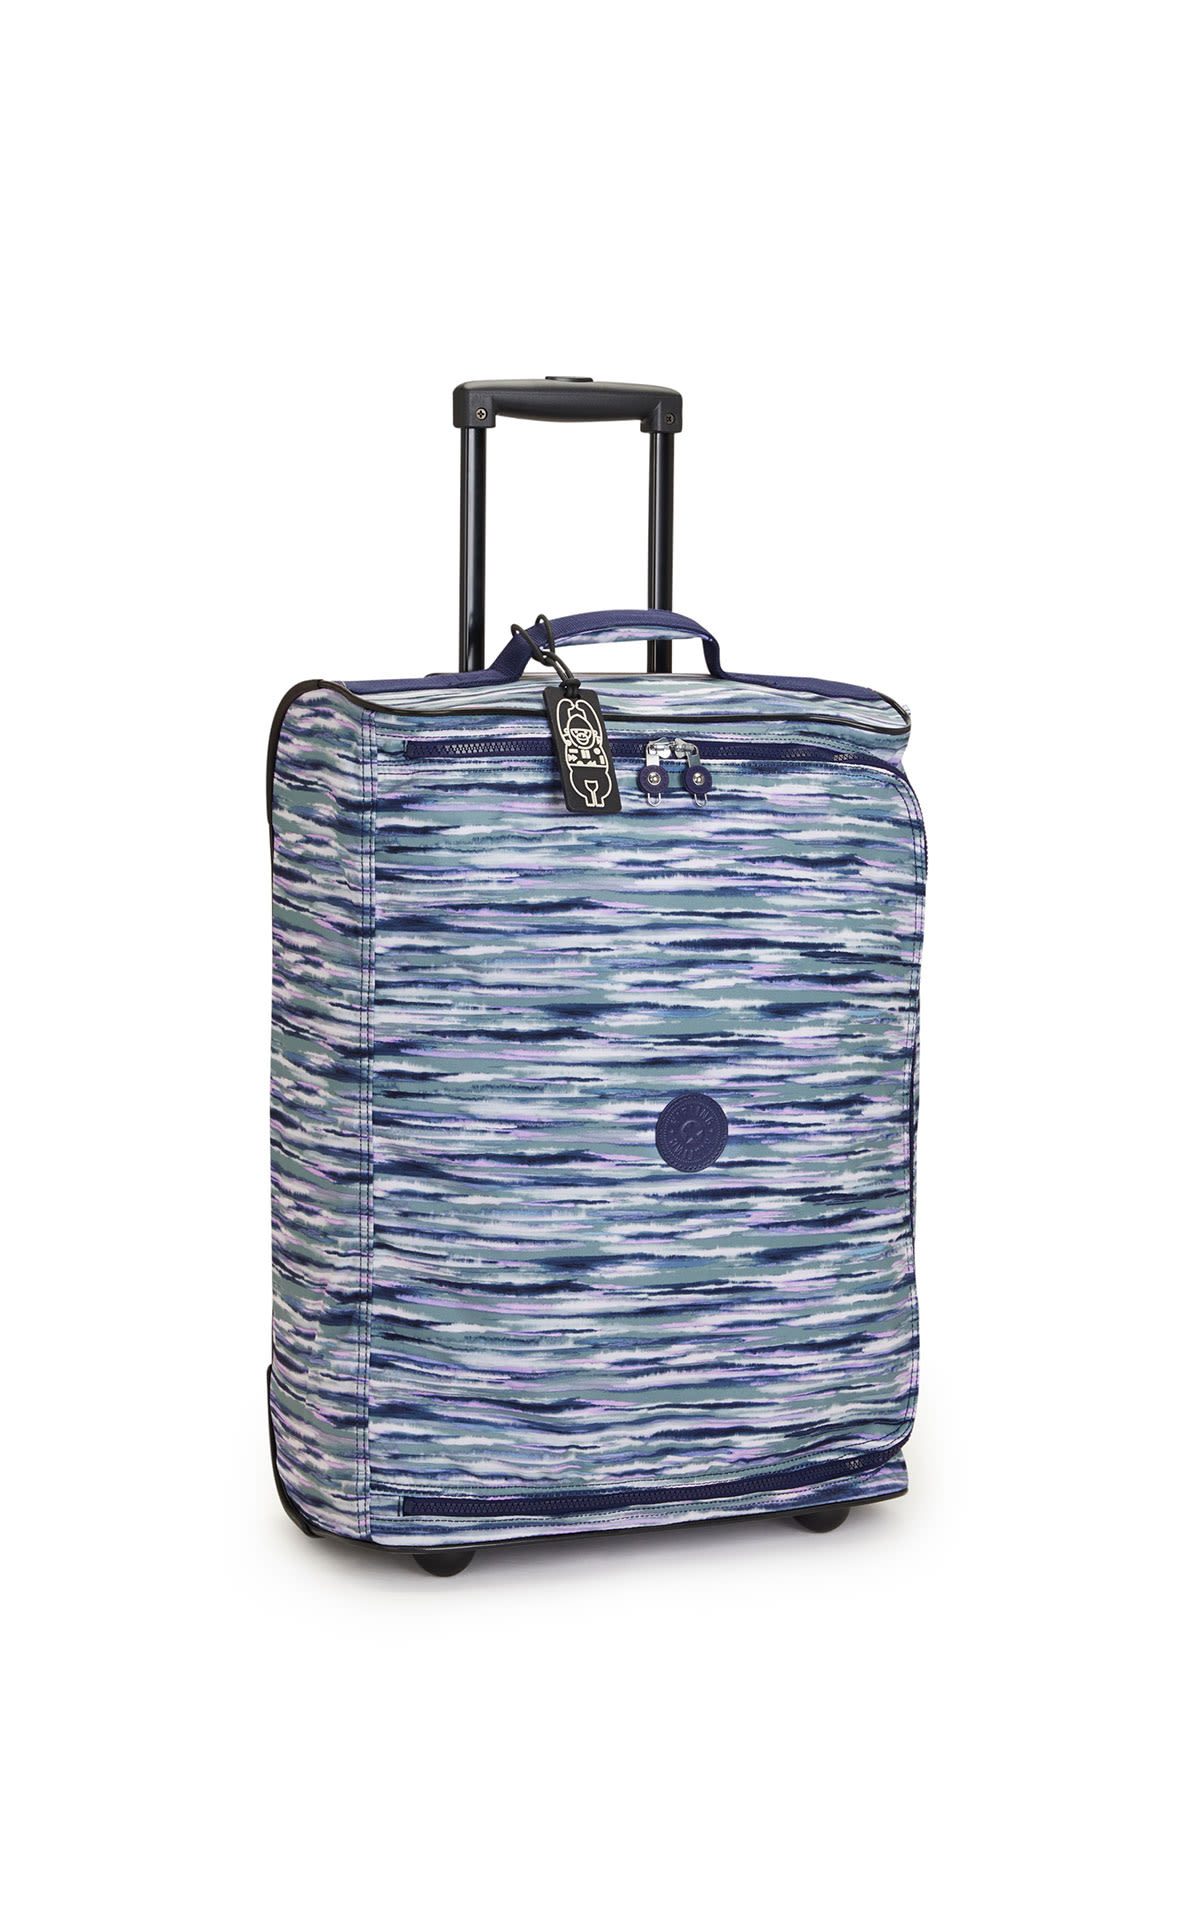 Medium printed suitcase on wheels Kipling